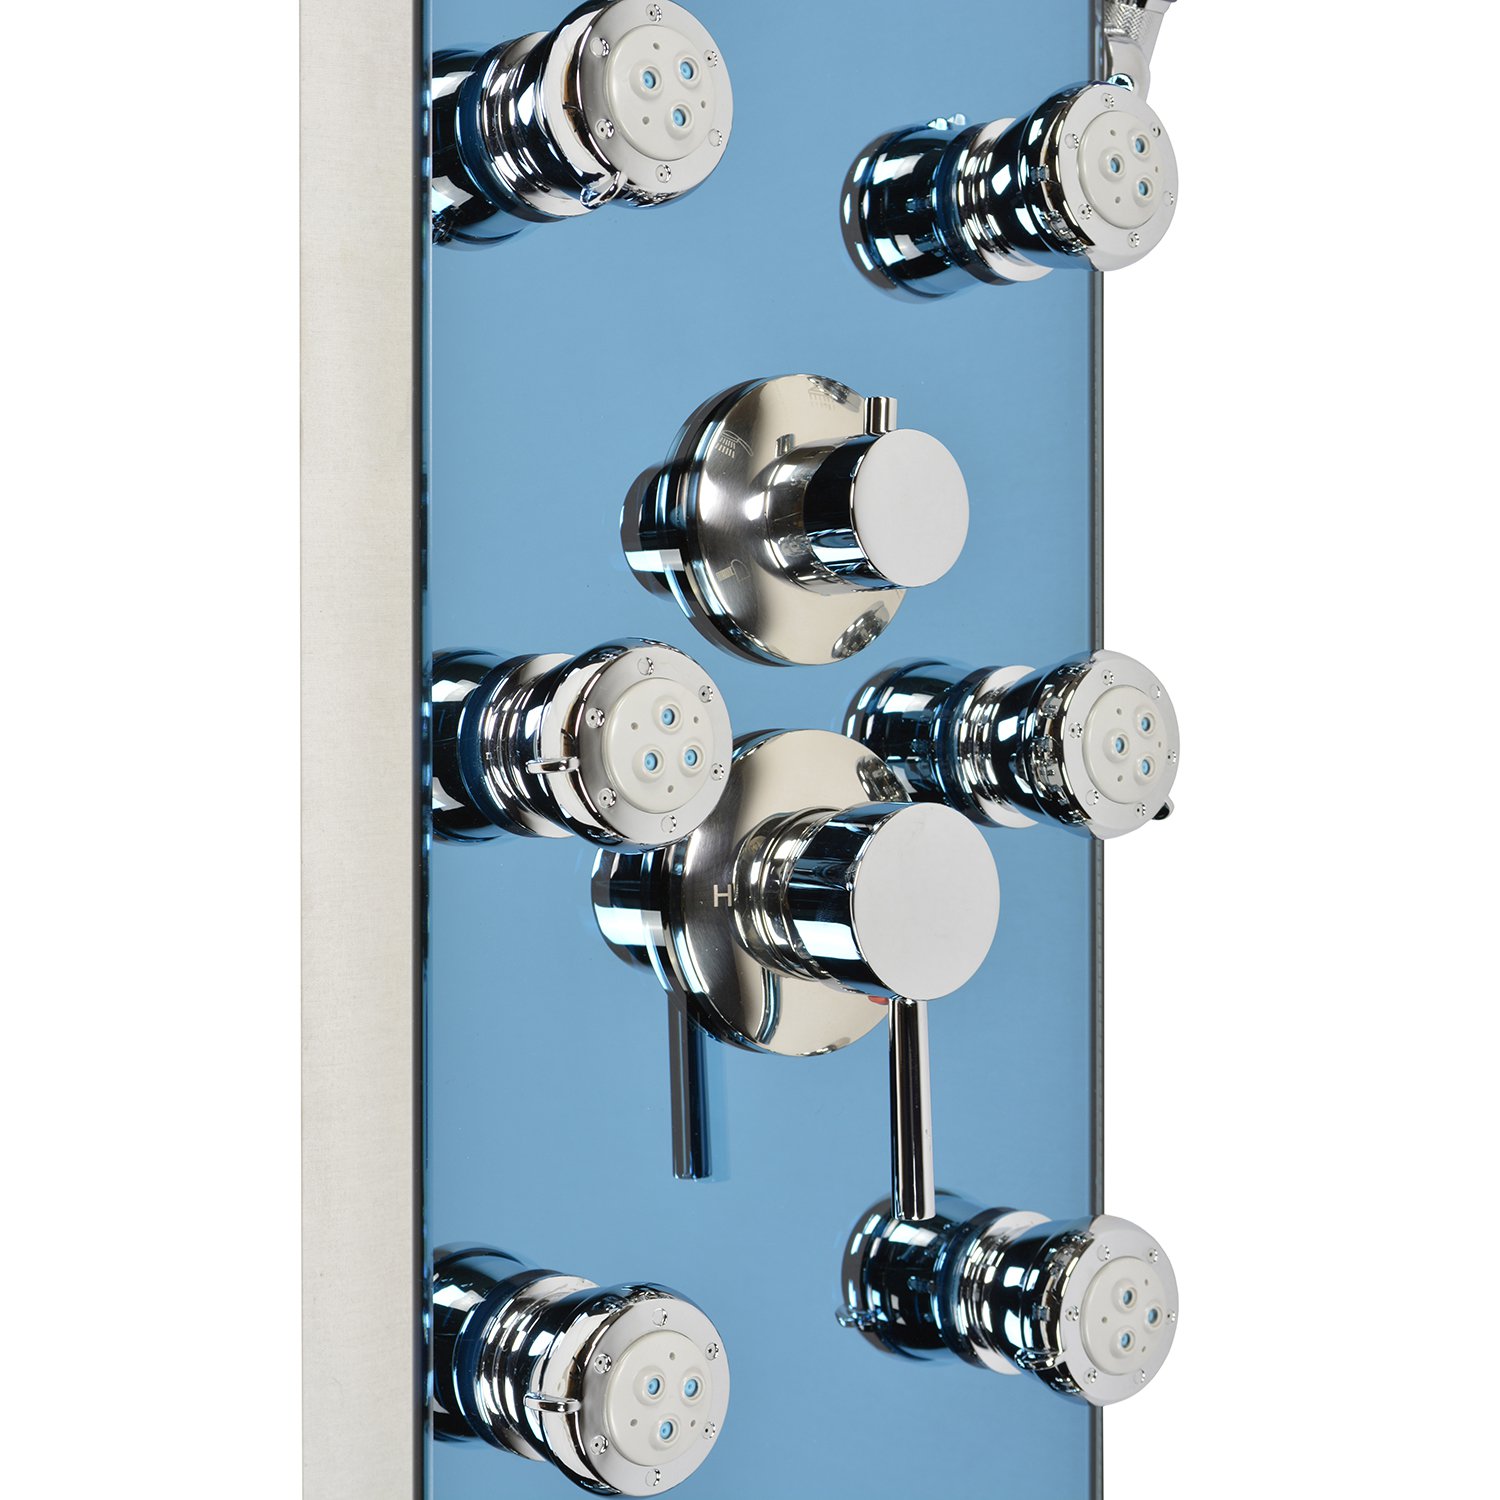 Blue Ocean 52” Stainless Steel SPV878392H Shower Panel